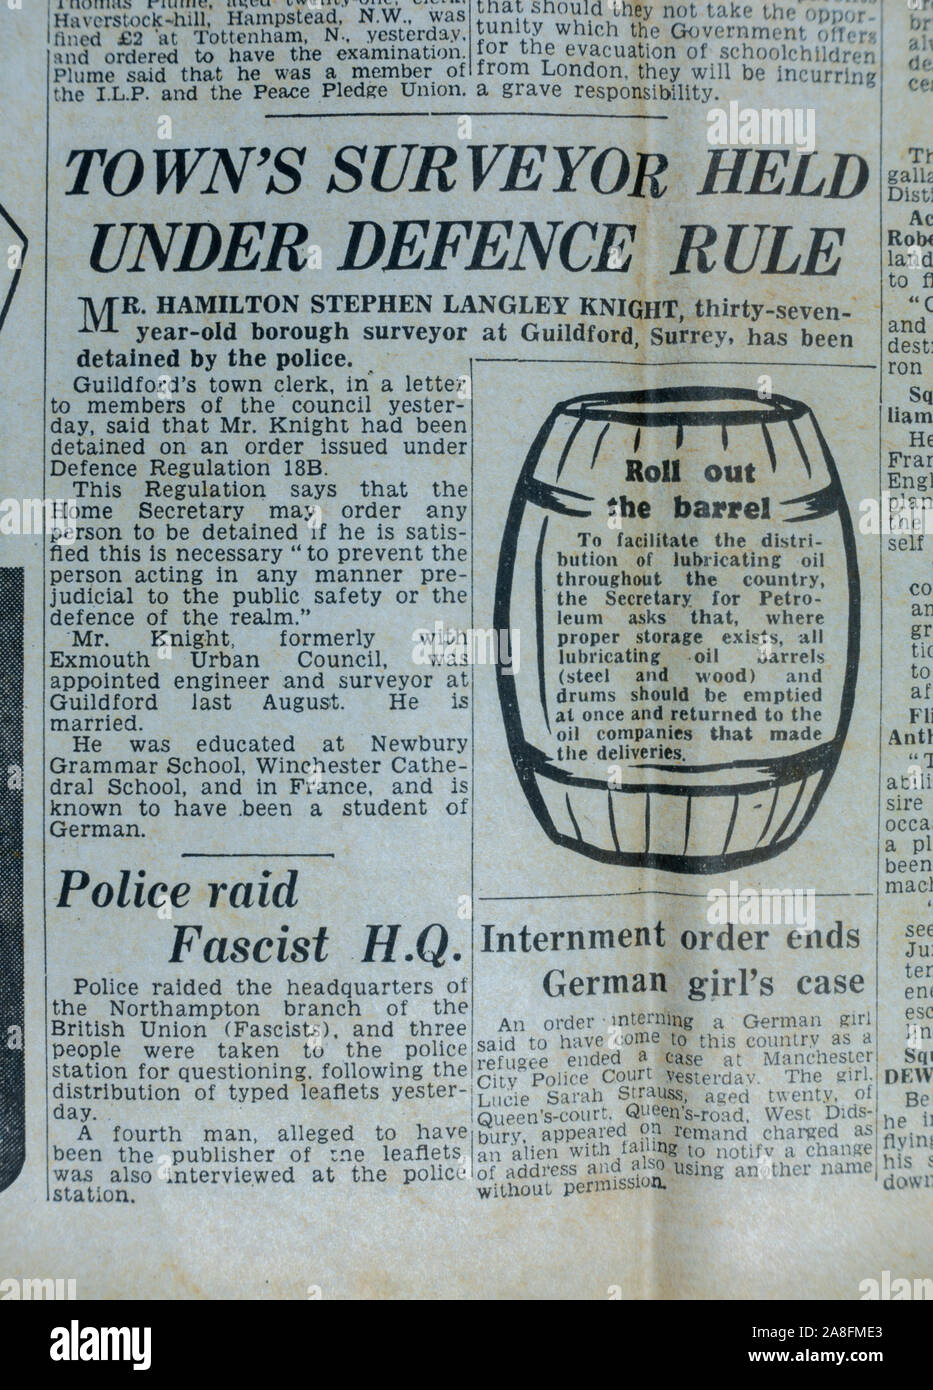 Rapport qu'un arpenteur de la ville a été détenu pour 'remarque', journal Daily Express (réplique) le 31 mai 1940 lors de l'évacuation de Dunkerque. Banque D'Images